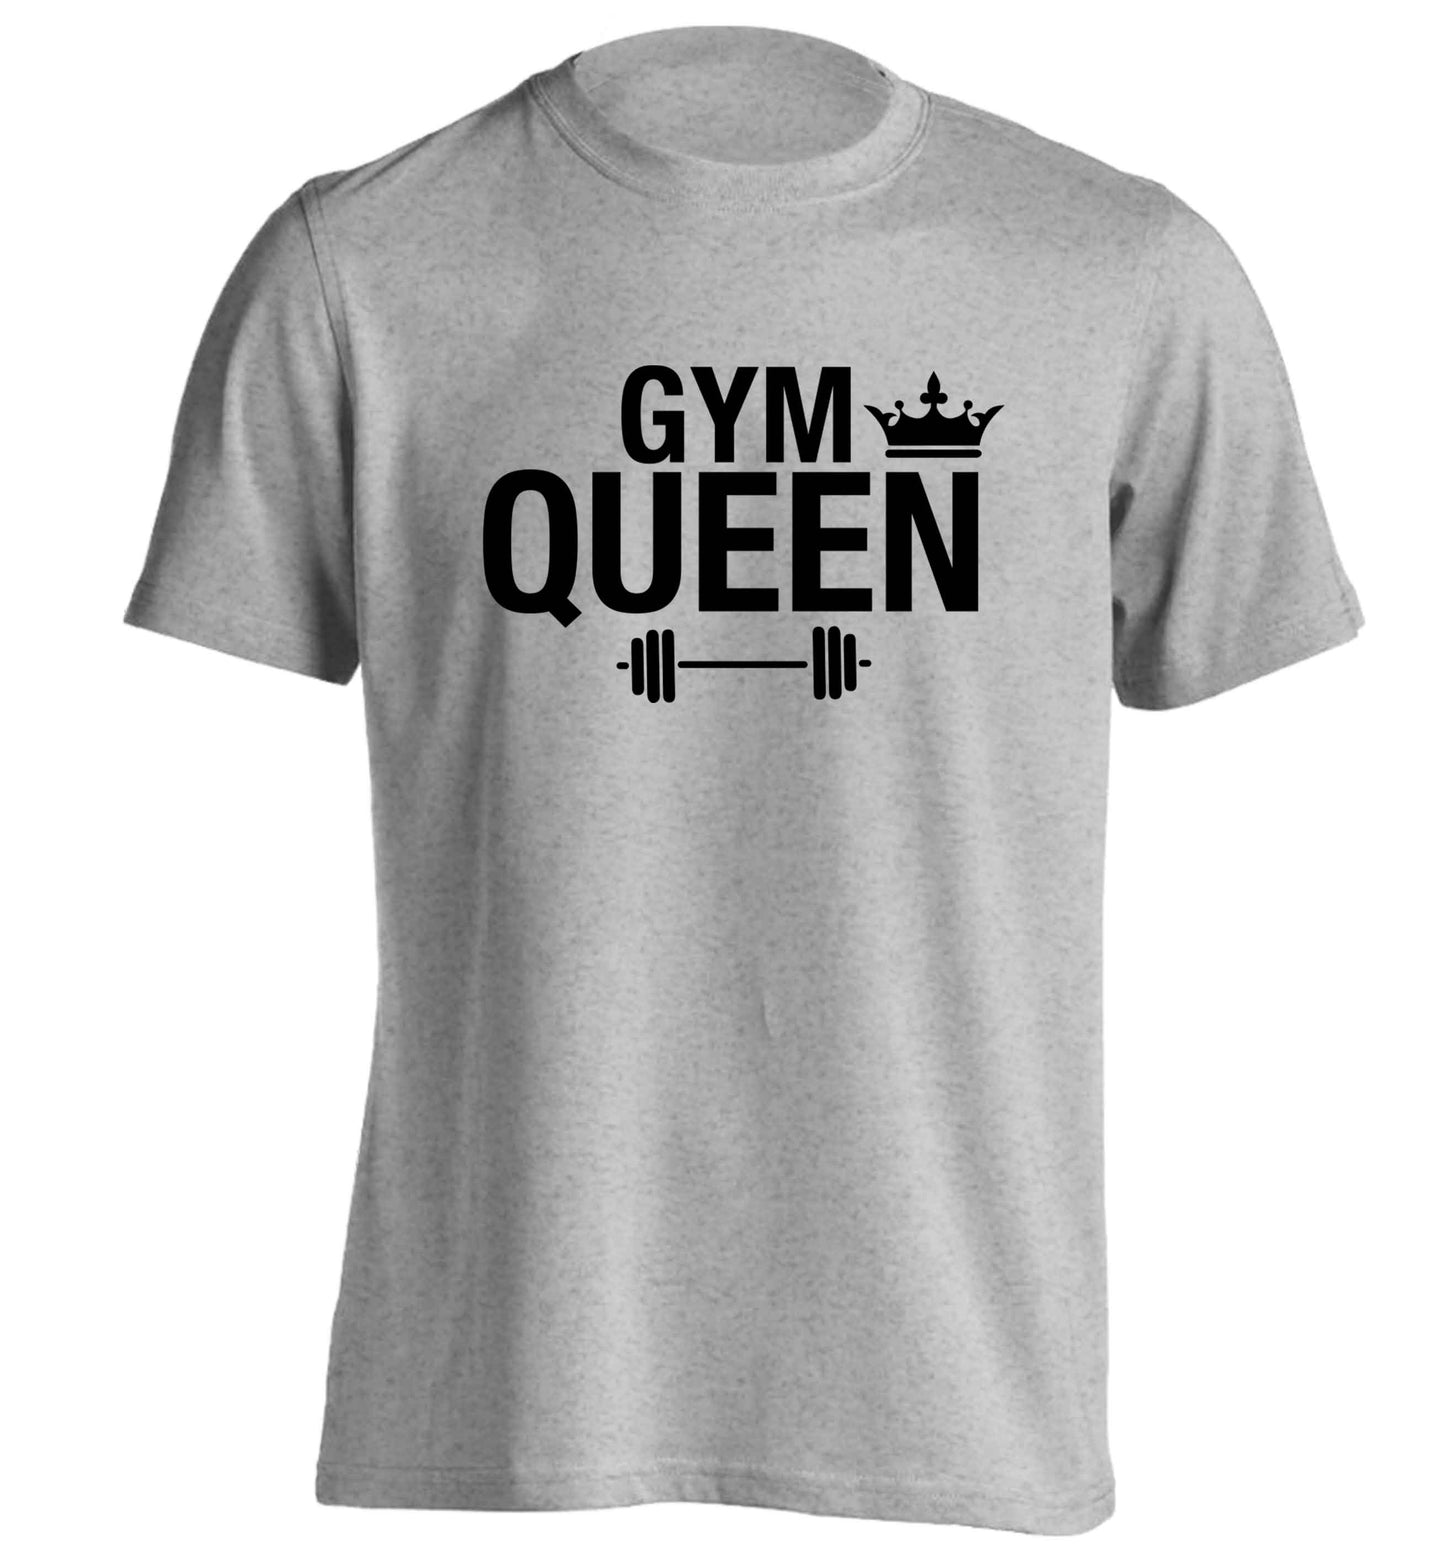 Gym queen adults unisex grey Tshirt 2XL